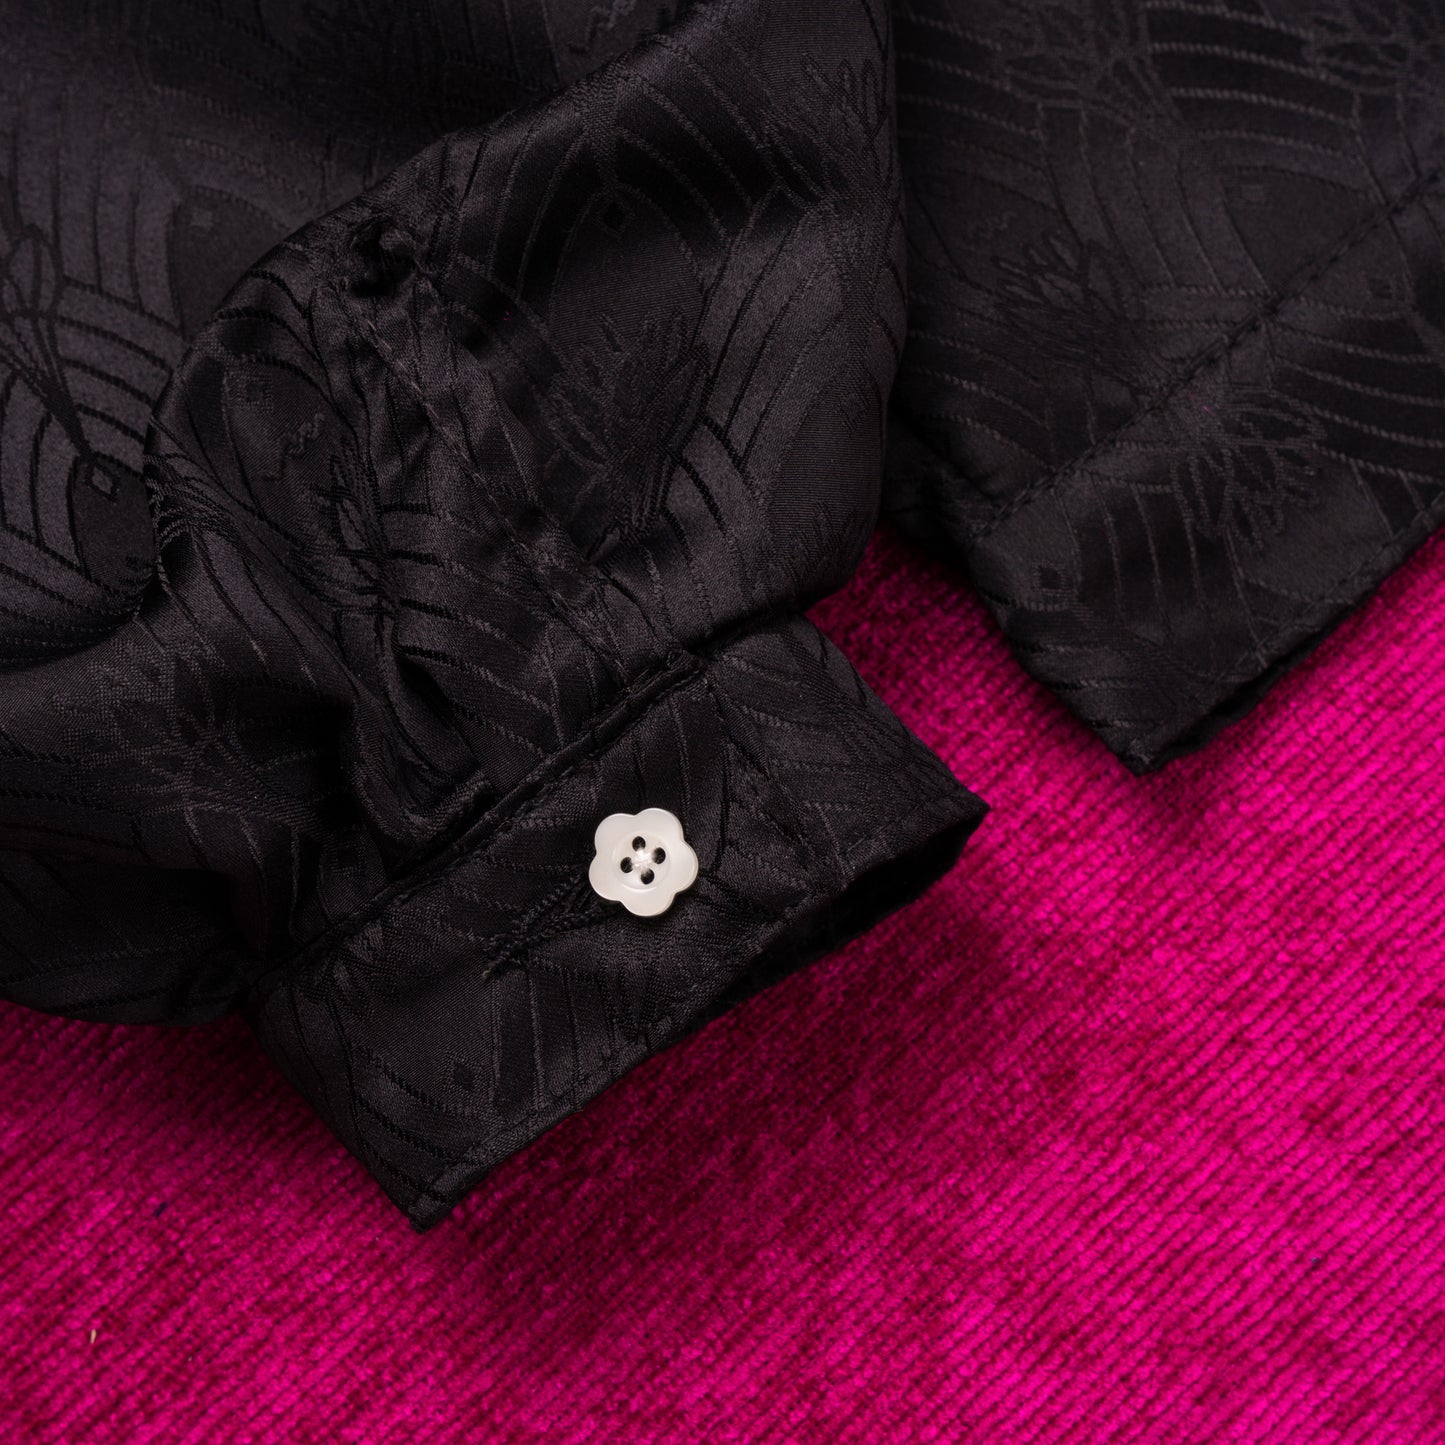 Emiria Jacket Lotus - MATA CLOTHiER